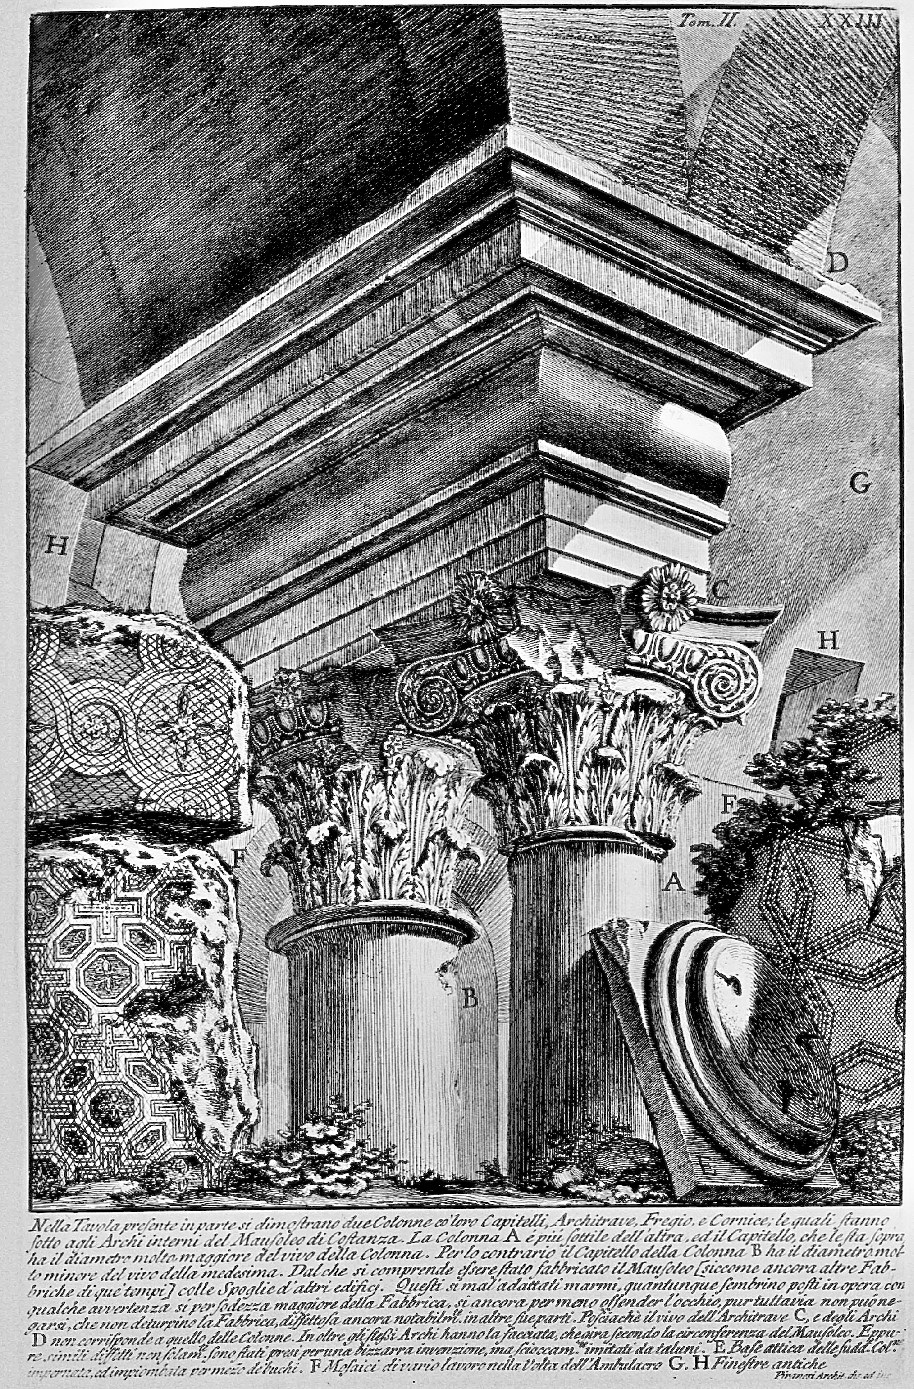 G.B. Piranesi, interno del Mausoleo di Costanza, from Antichità Romane vol. II, BSR collection